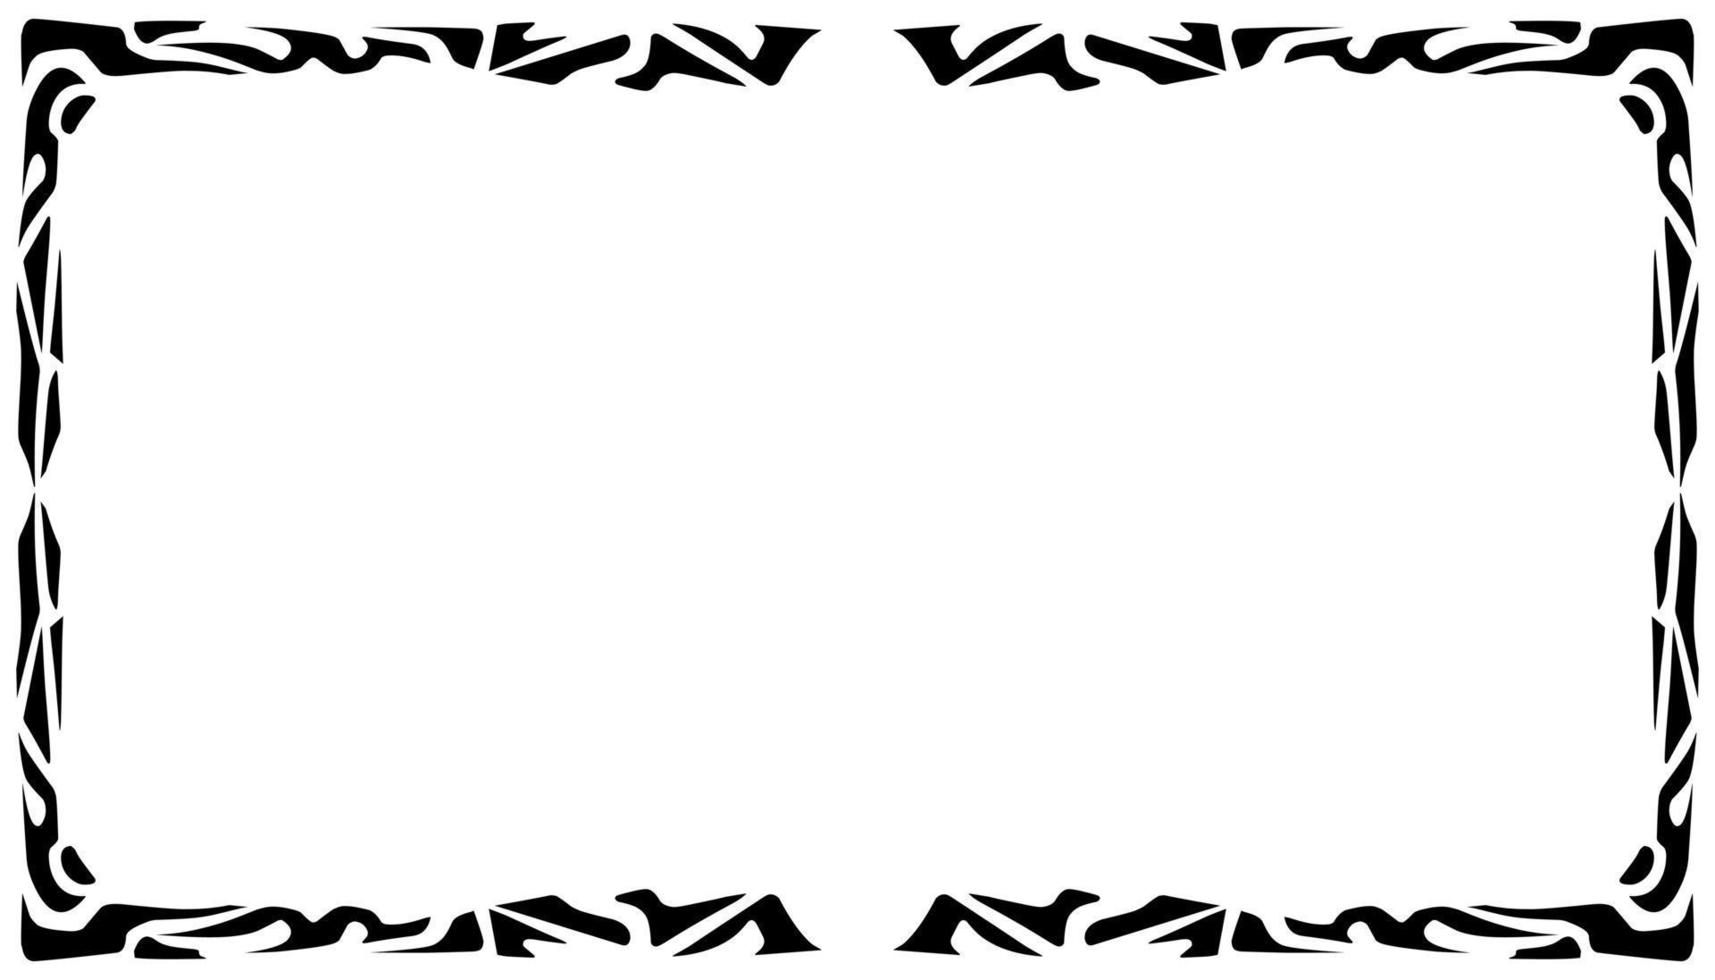 Illustration von ein Foto Rahmen mit ein Stammes- Design vektor